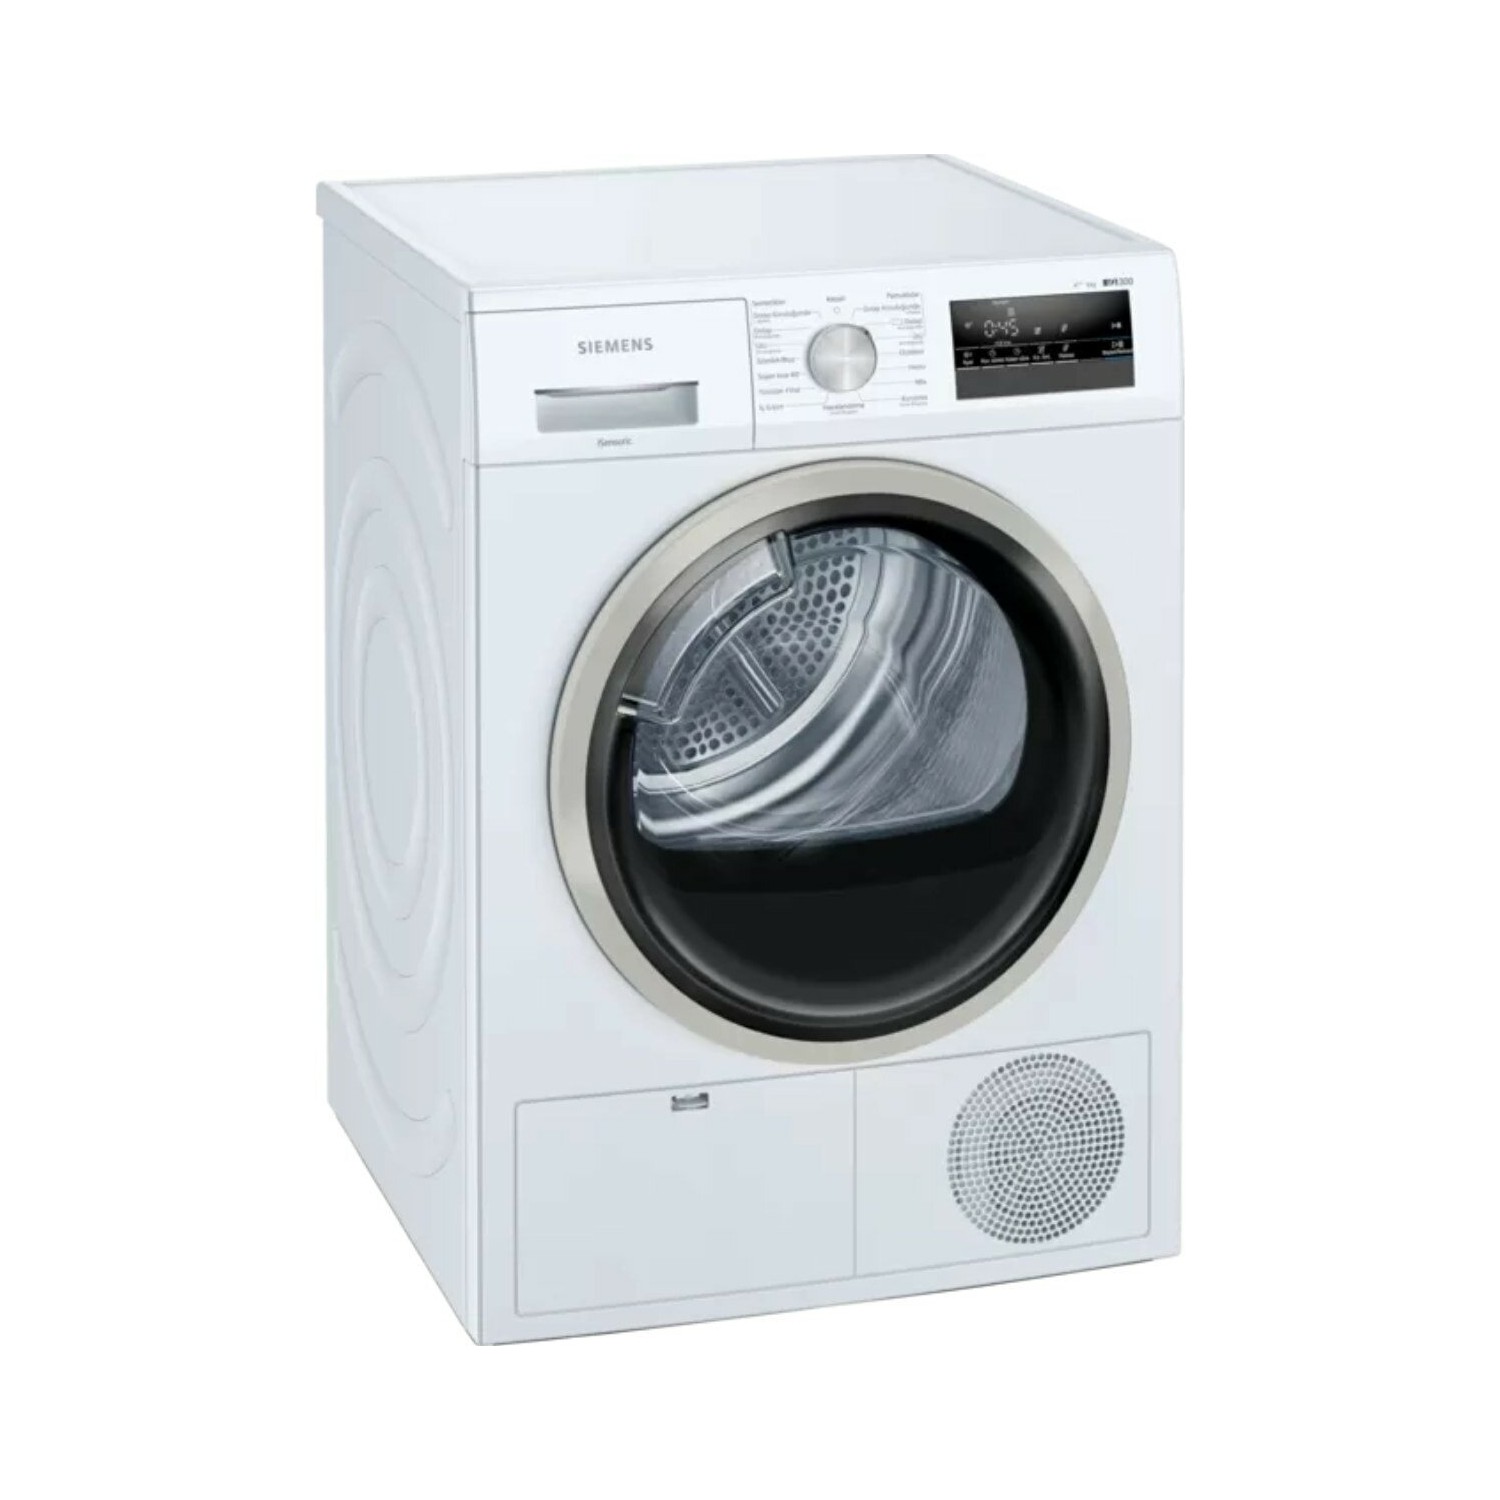 çamaşır kurutma makinesi